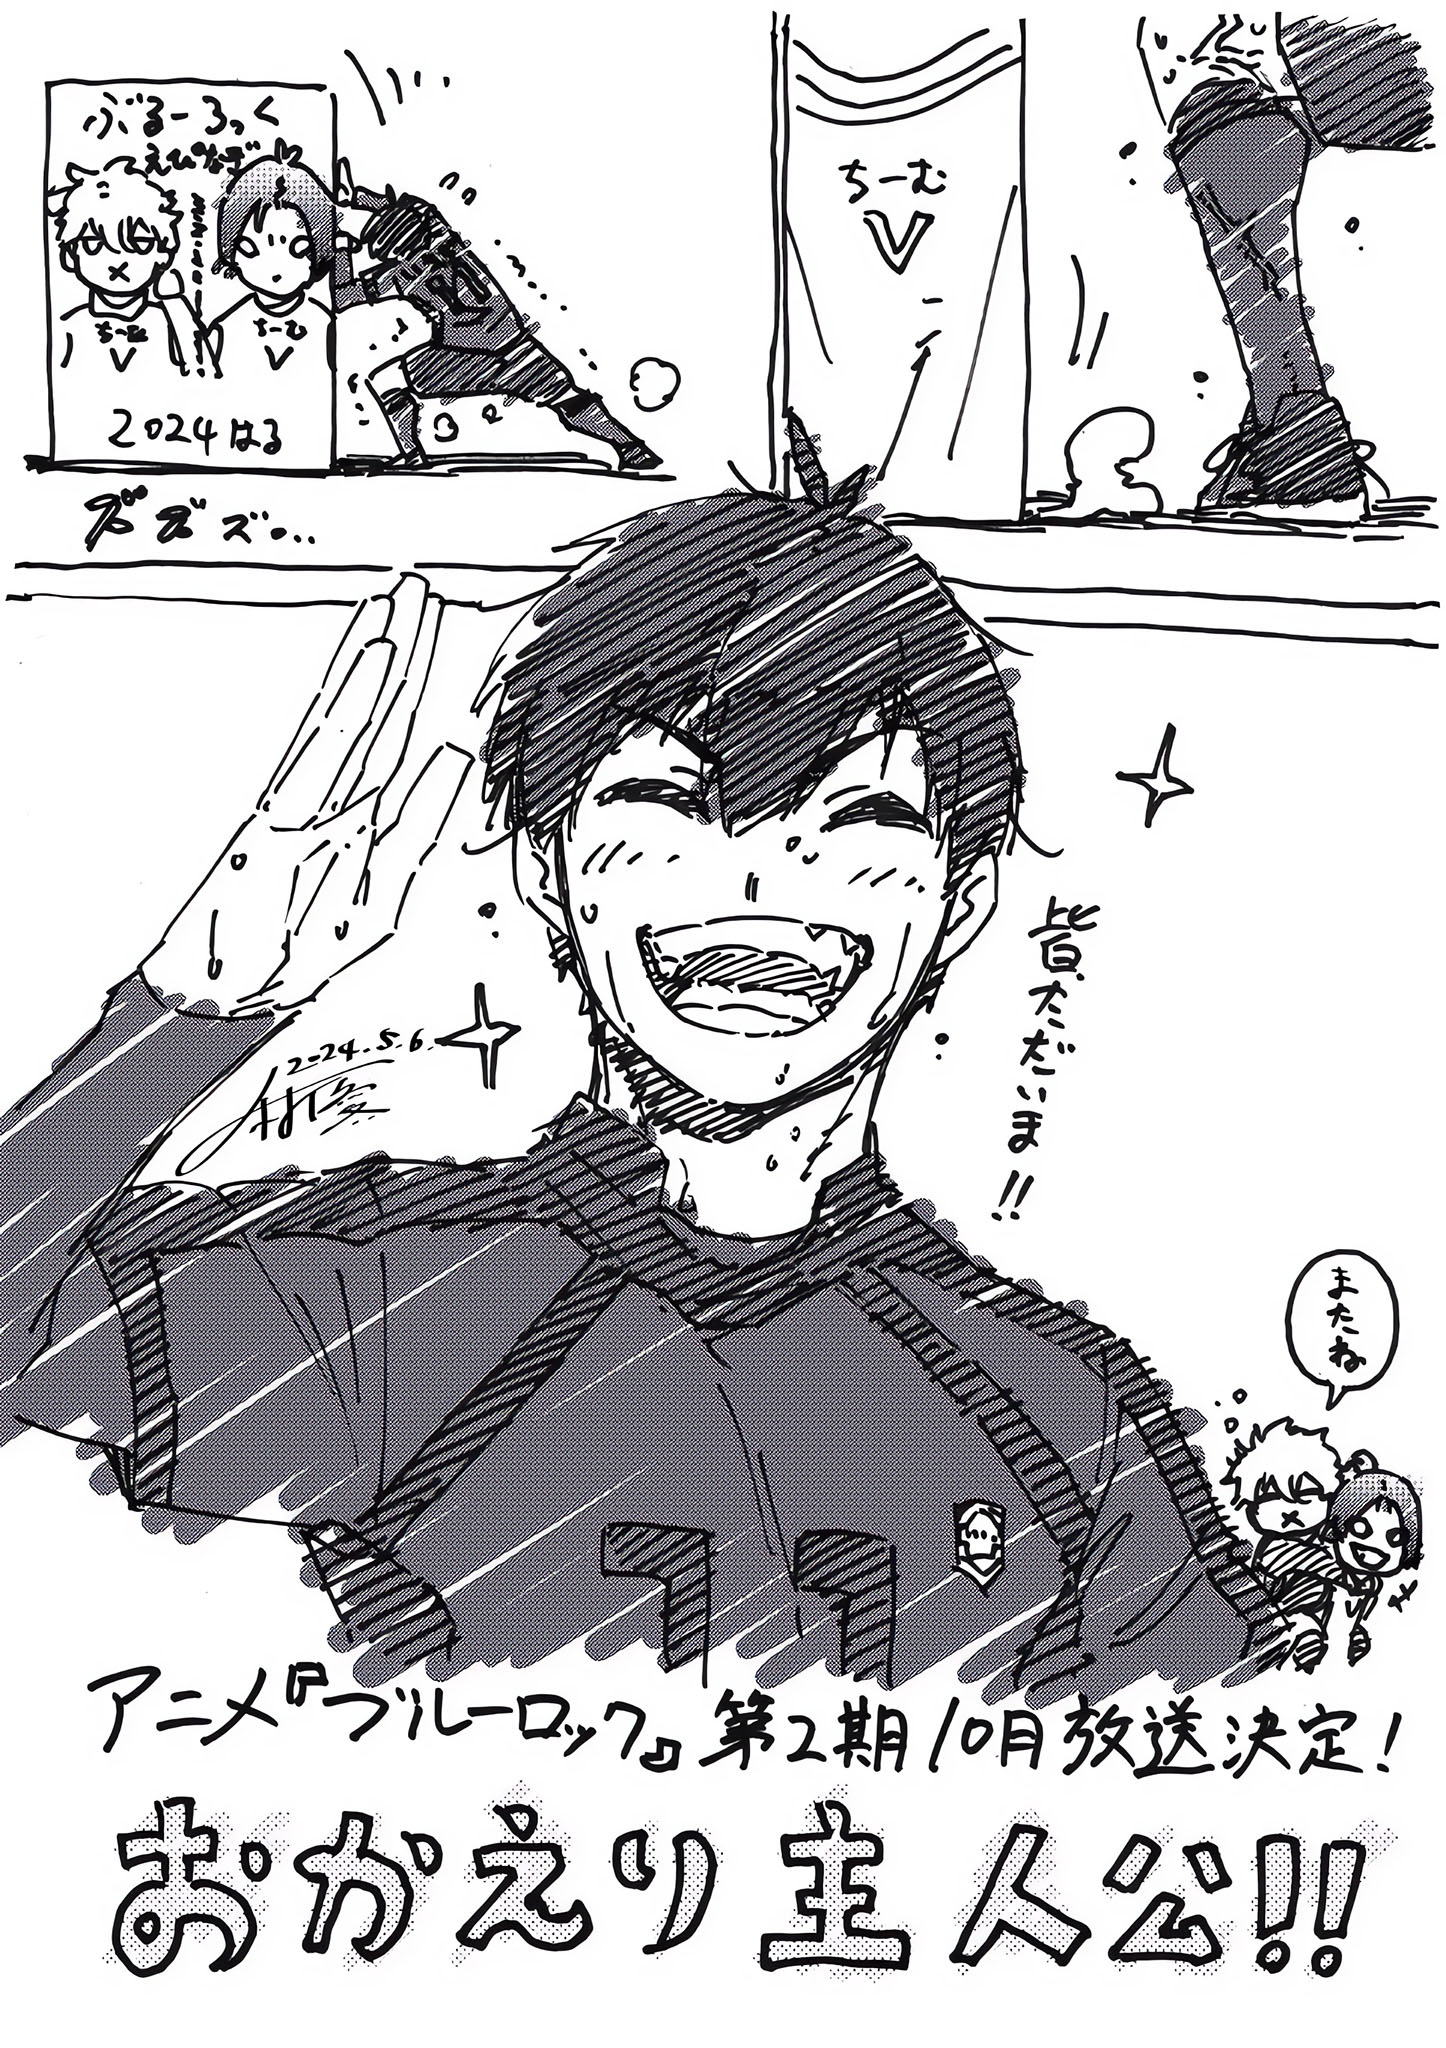 Illustration commémorative de Yosuke Nomura pour la saison 2 de l'anime BLUE LOCK.